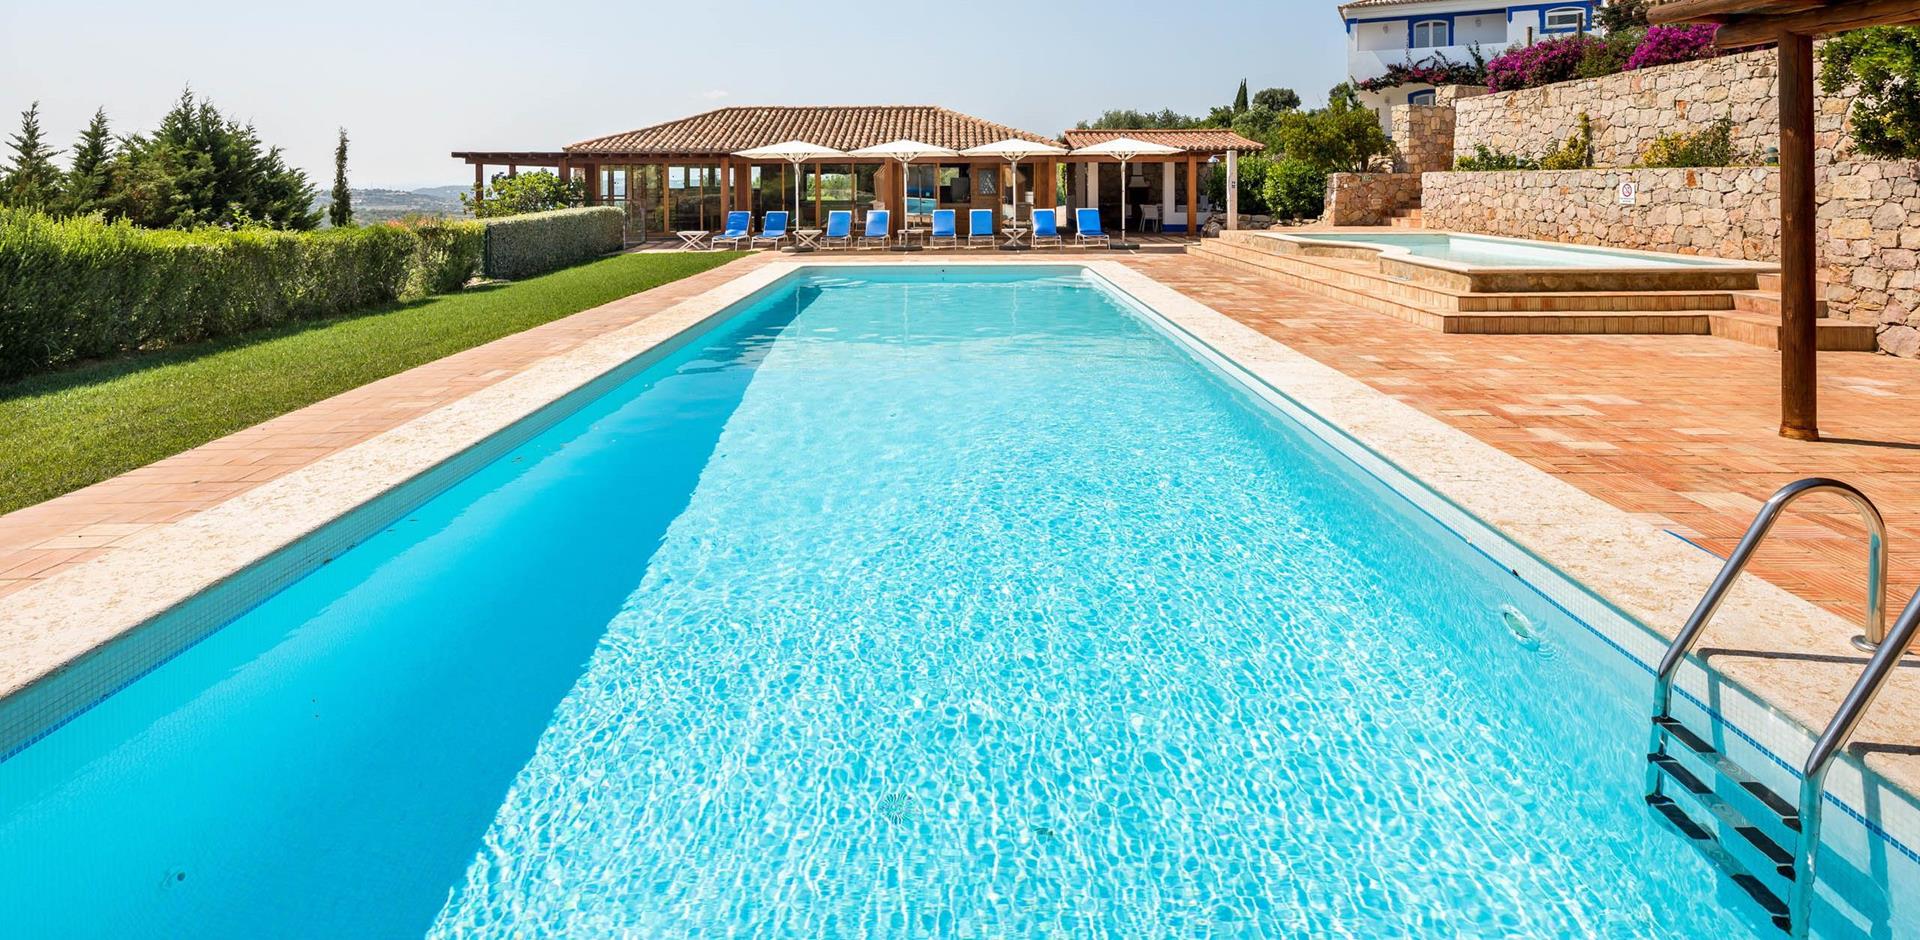 Pool, Villa Florescer, Algarve